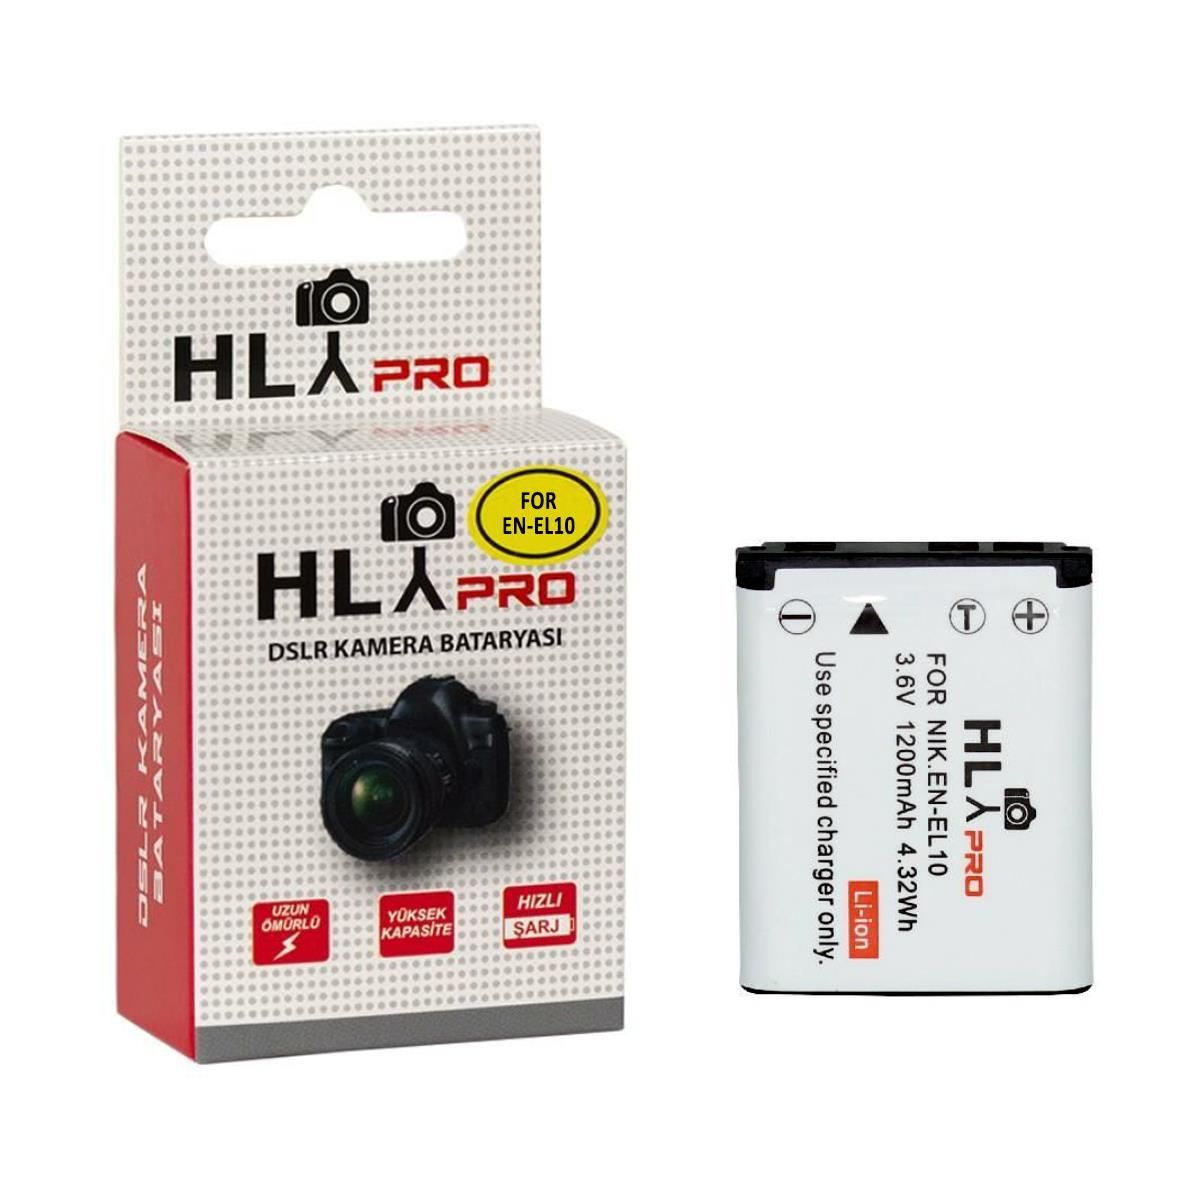 Hlypro Nikon Coolpix S200 için EN-EL10 Batarya